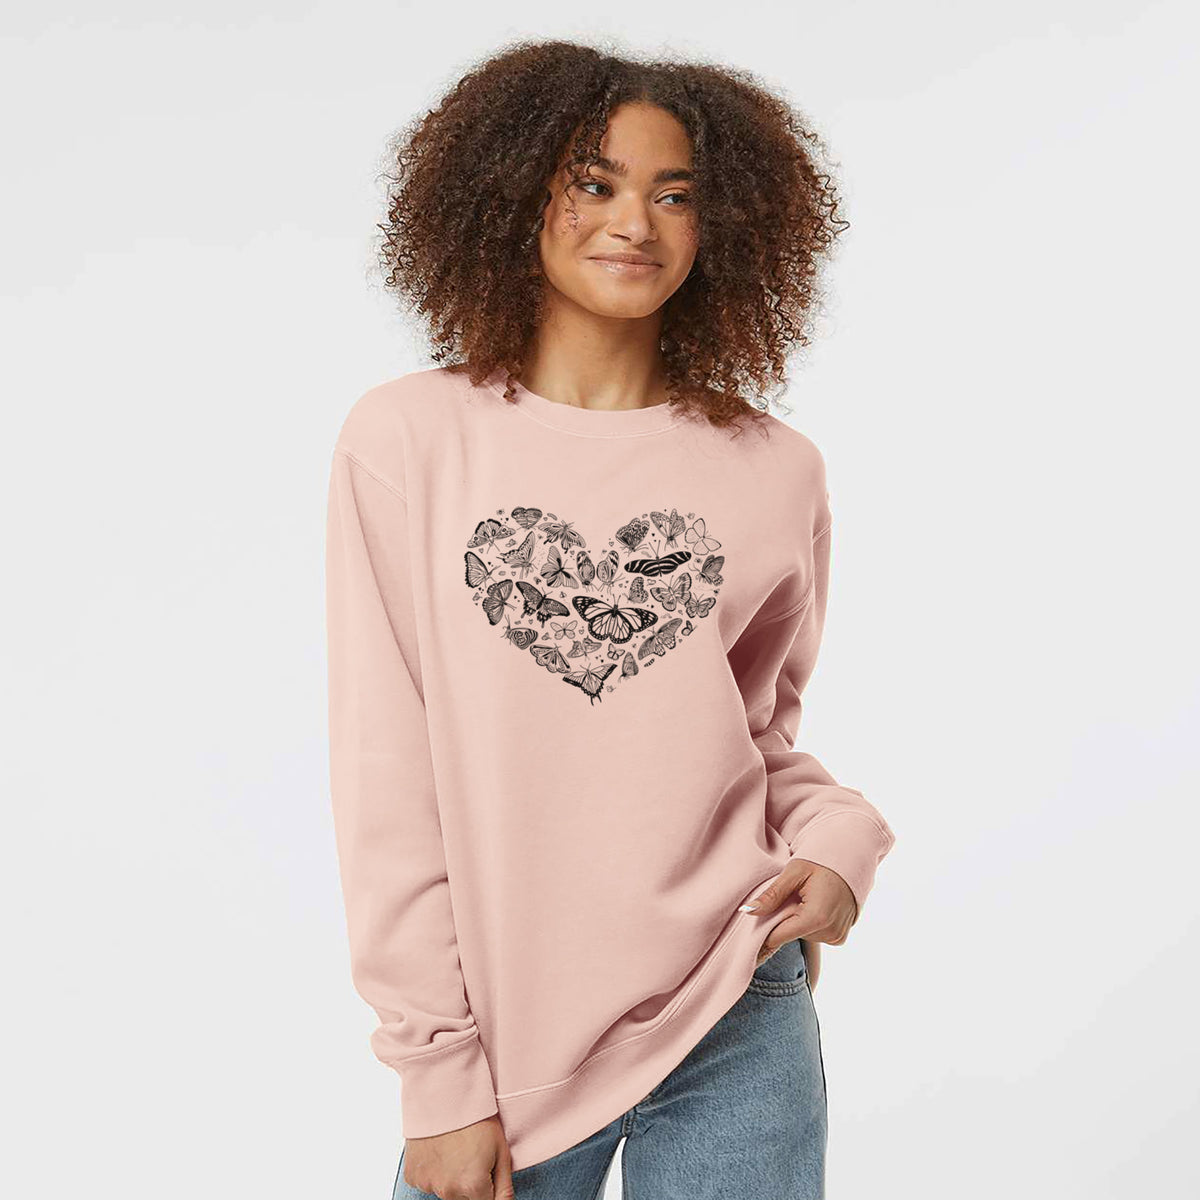 Heart Full of Butterflies - Unisex Pigment Dyed Crew Sweatshirt